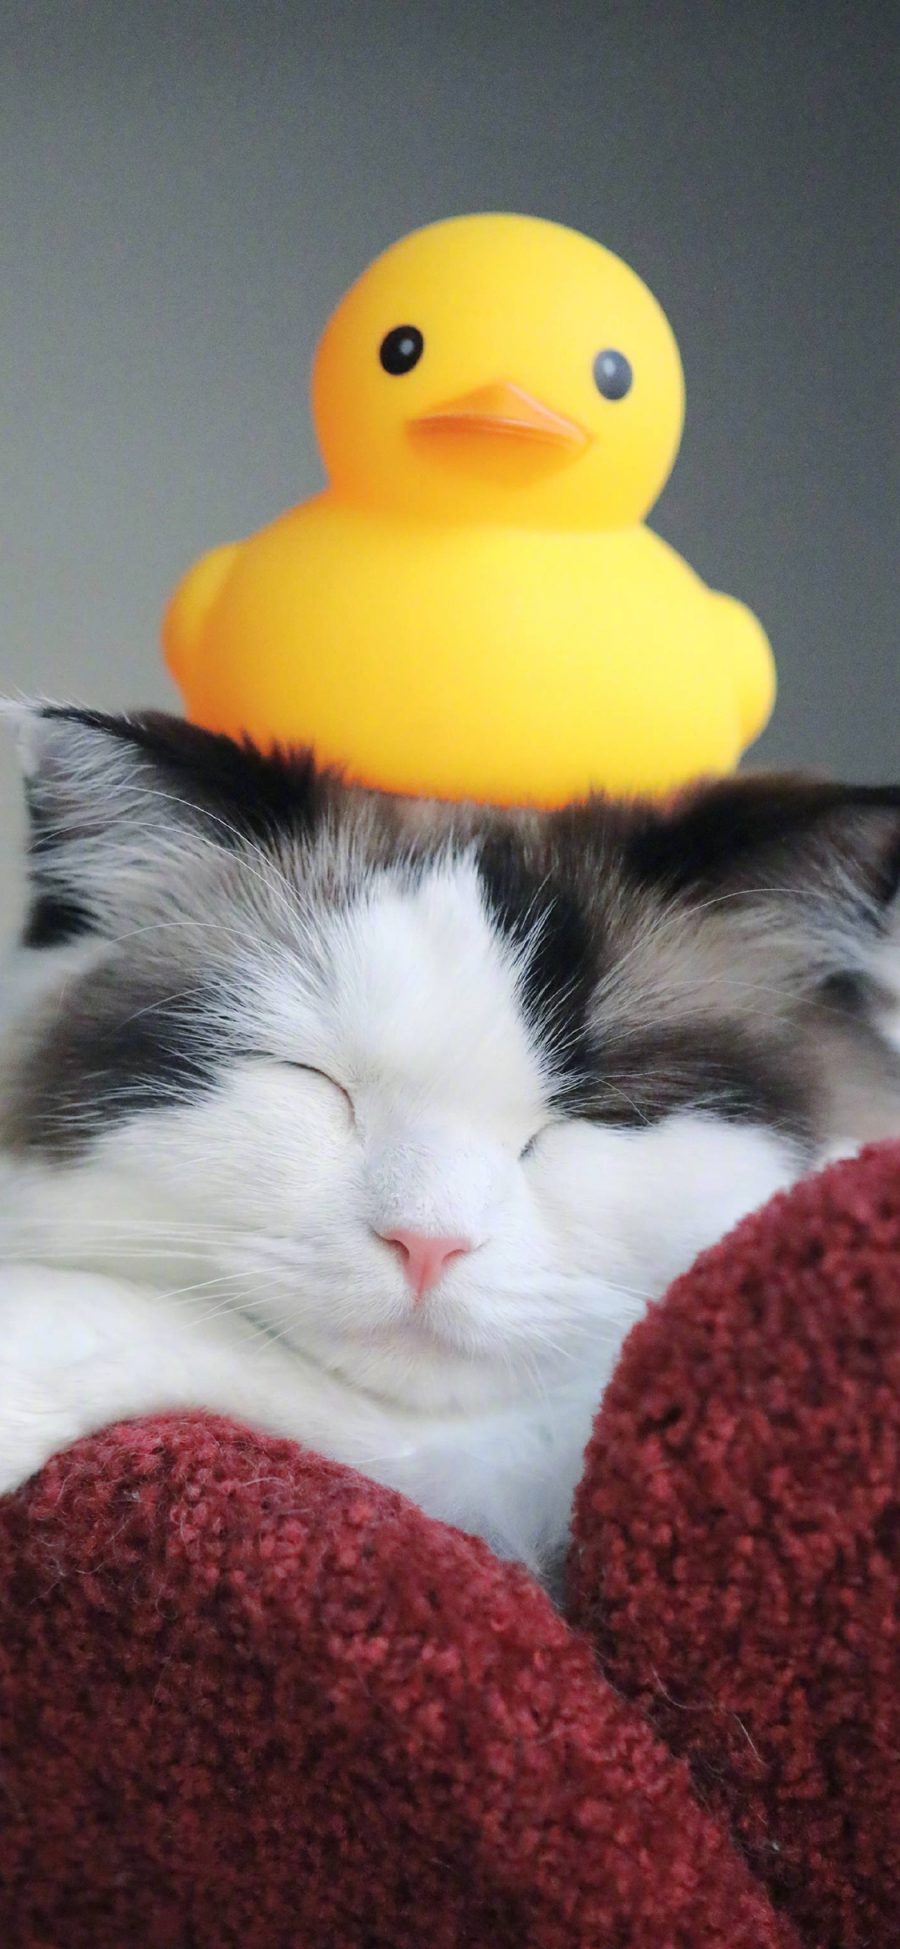 [2436×1125]猫咪 可爱 小黄鸭 橡胶鸭 喵星人 宠物 苹果手机壁纸图片